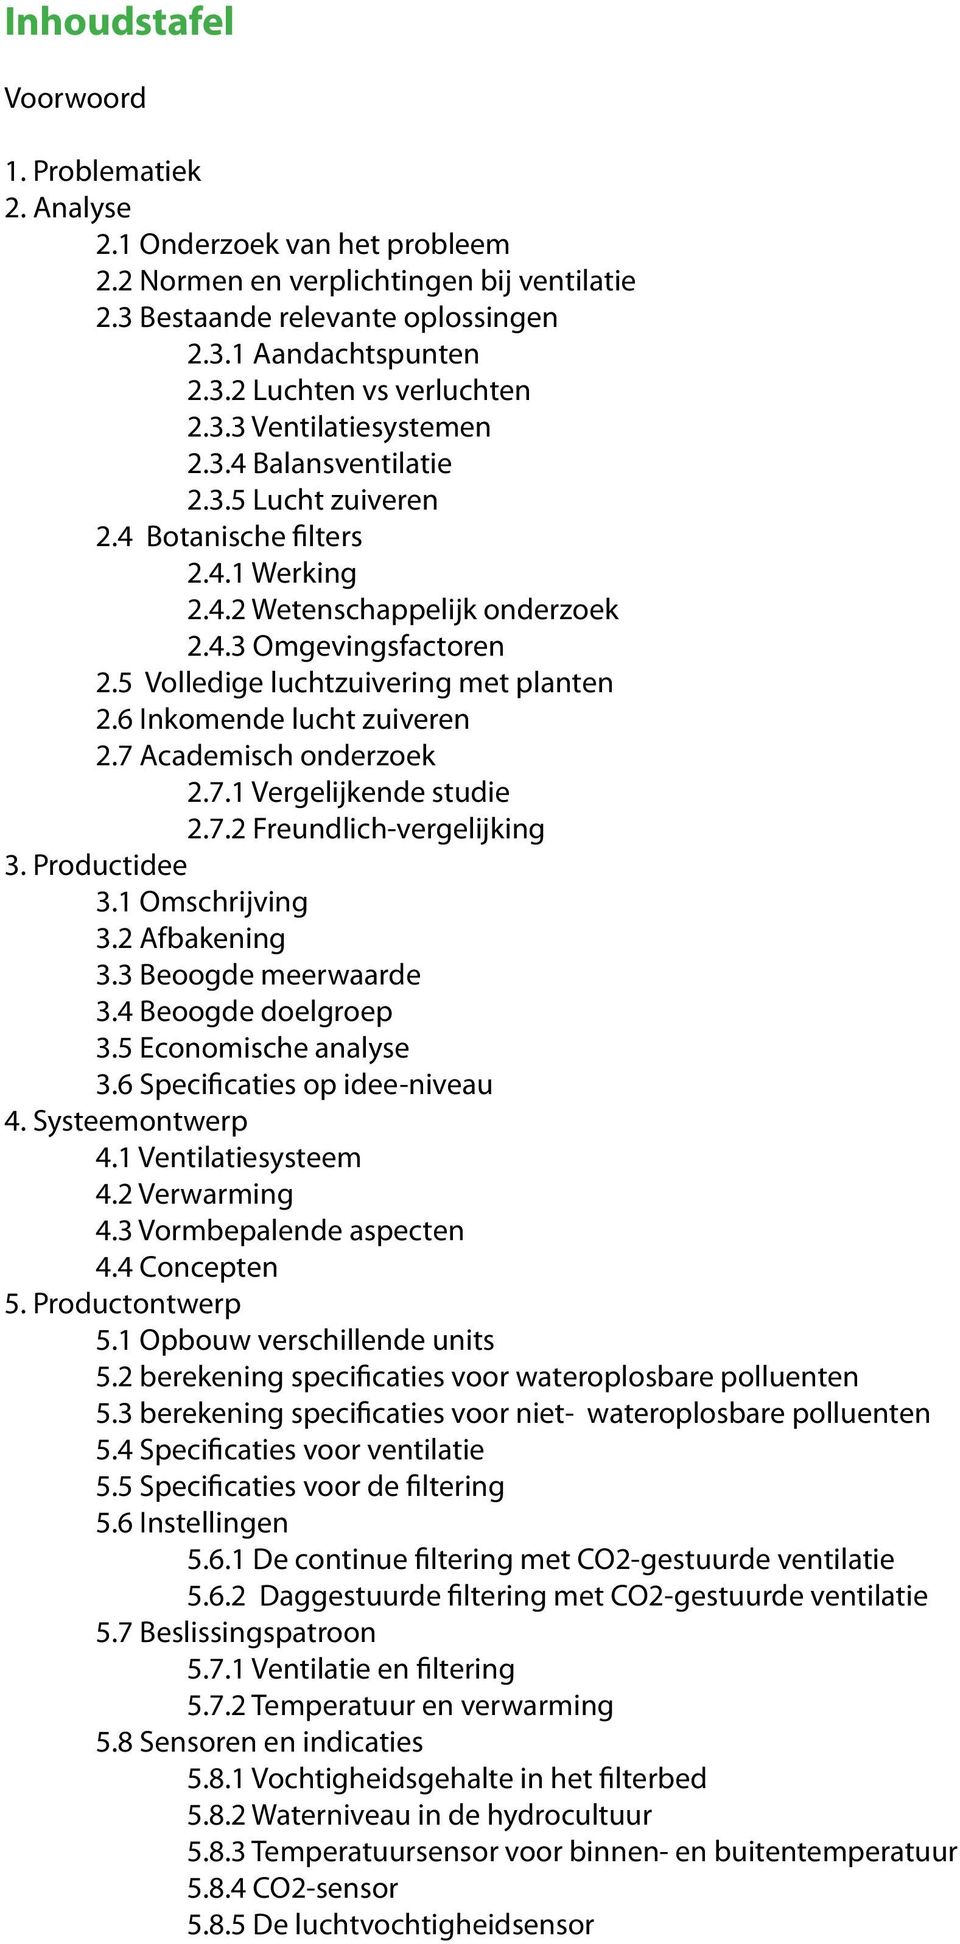 5 Volledige luchtzuivering met planten 2.6 Inkomende lucht zuiveren 2.7 Academisch onderzoek 2.7.1 Vergelijkende studie 2.7.2 Freundlich-vergelijking 3. Productidee 3.1 Omschrijving 3.2 Afbakening 3.